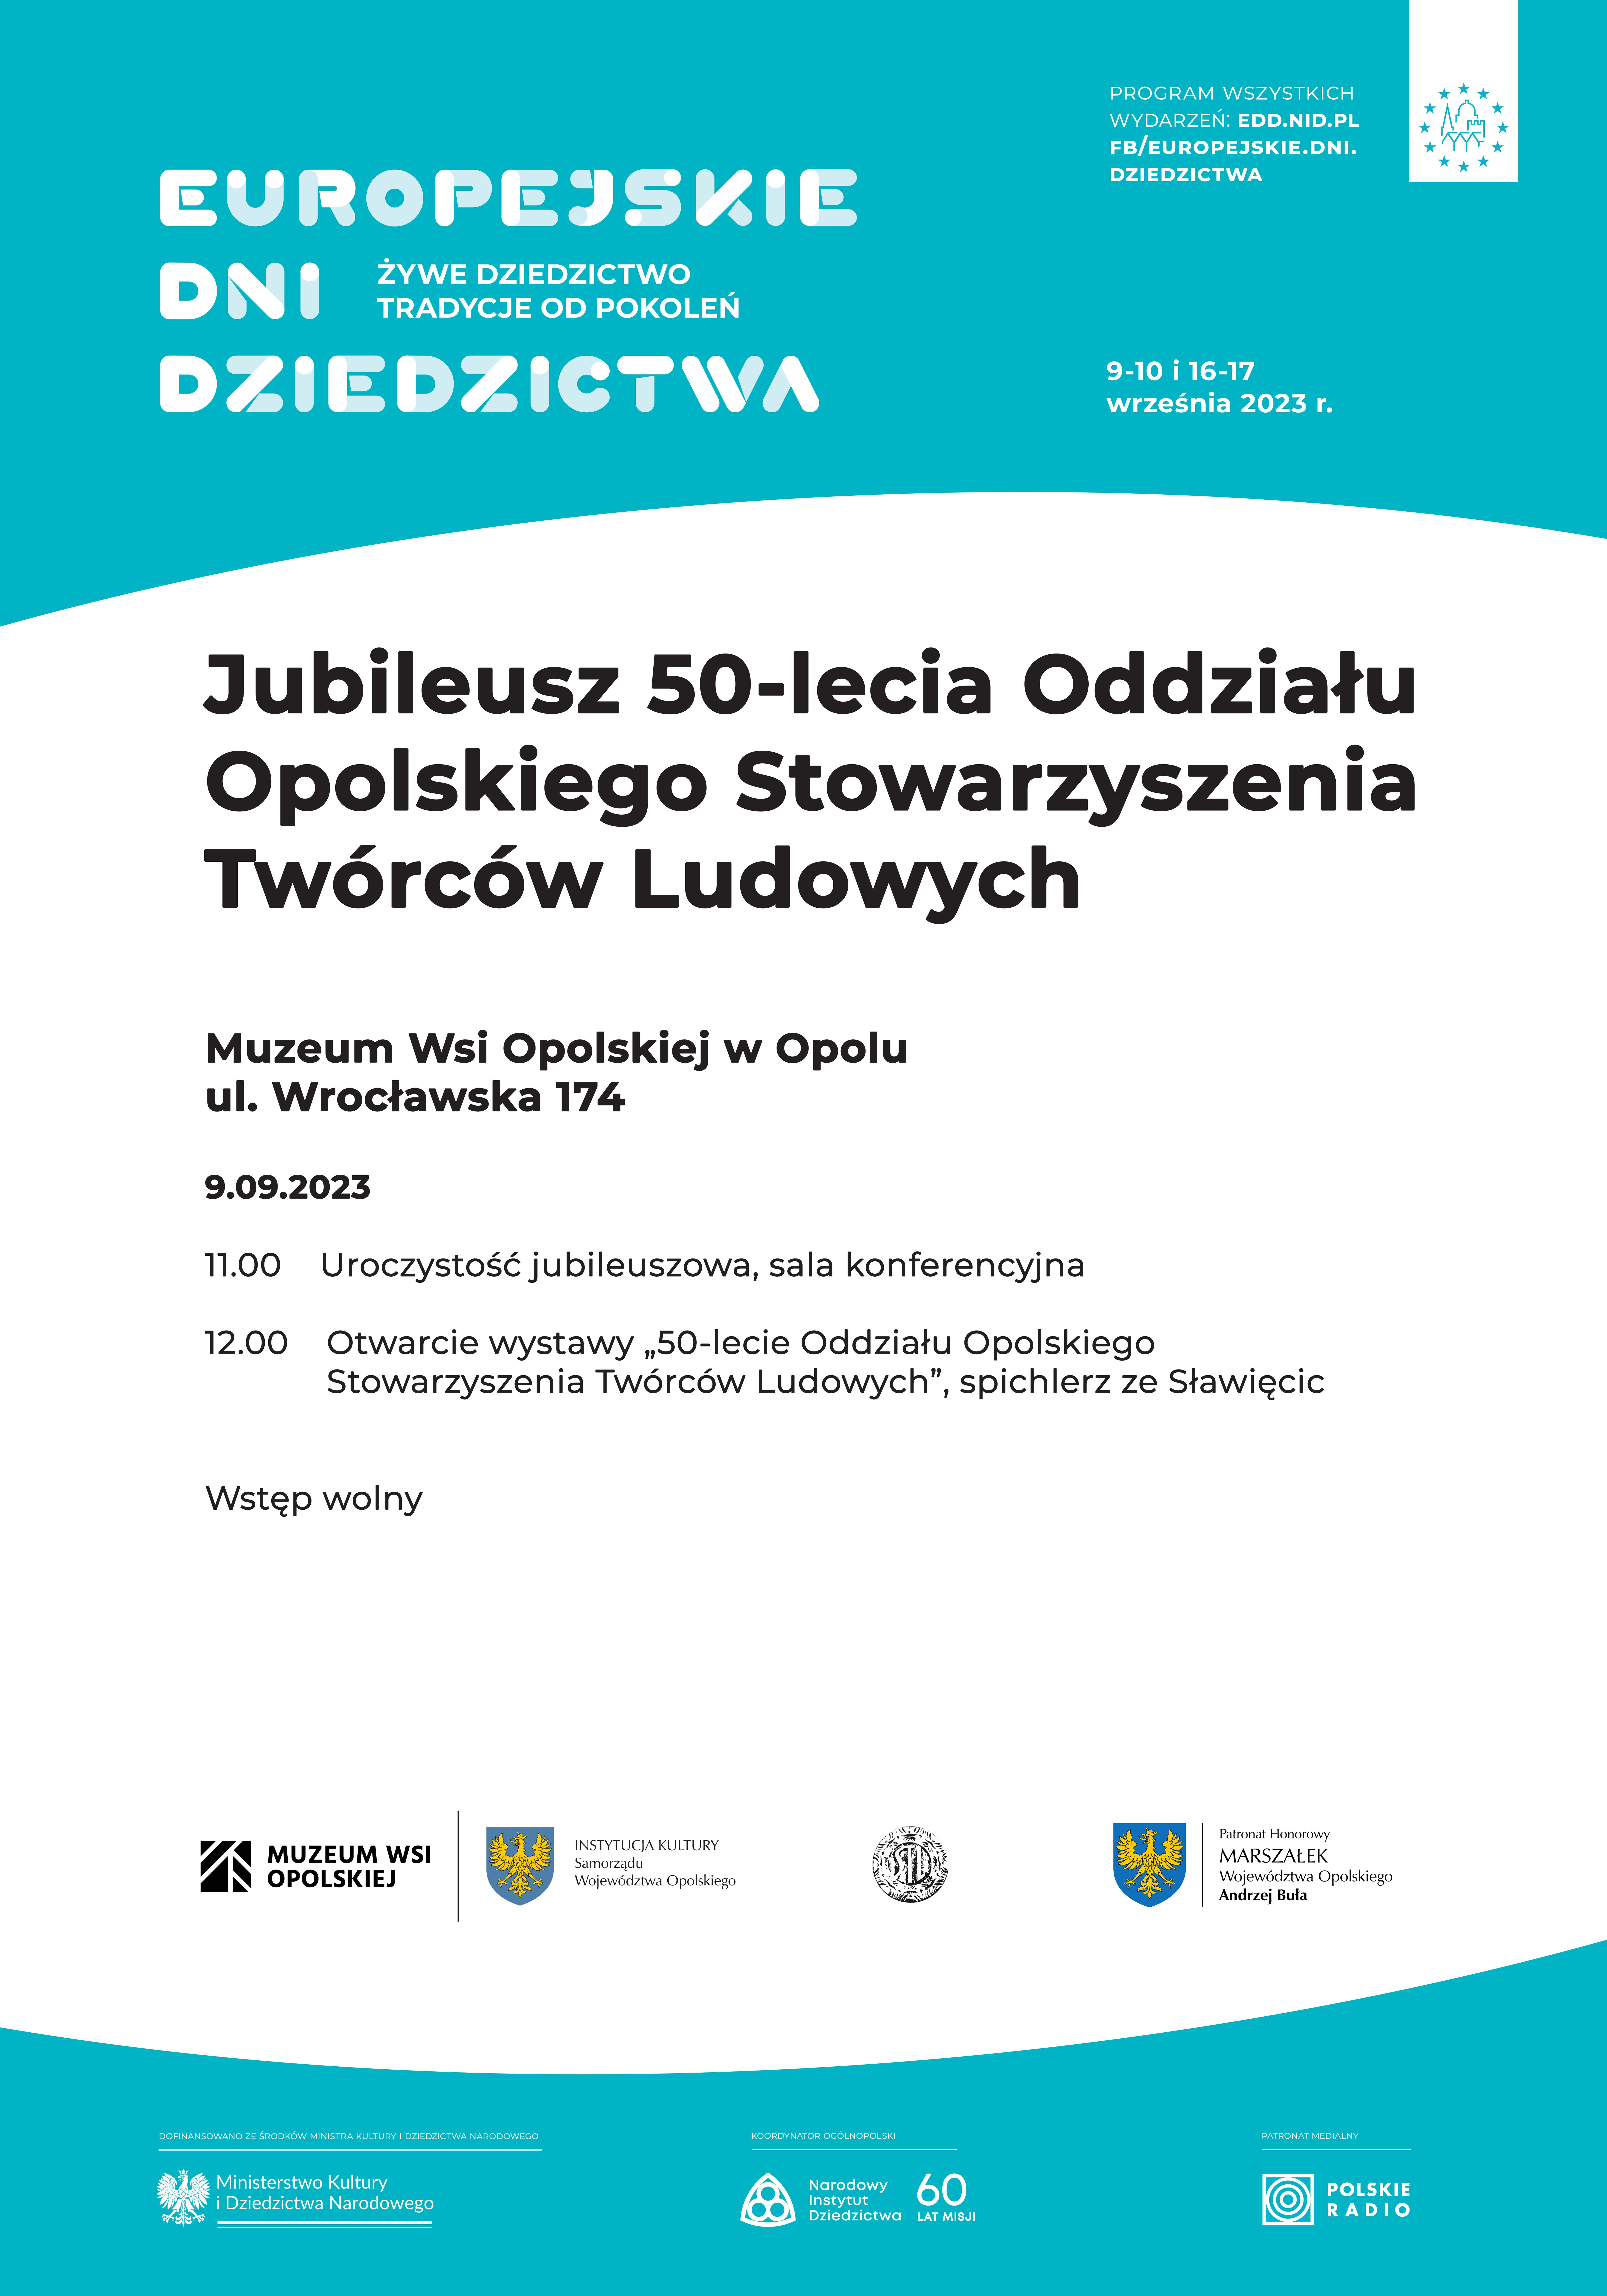 Plakat promujący Europejskie Dni Dziedzictwa 2023 w Muzeum Wsi Opolskiej w Opolu.